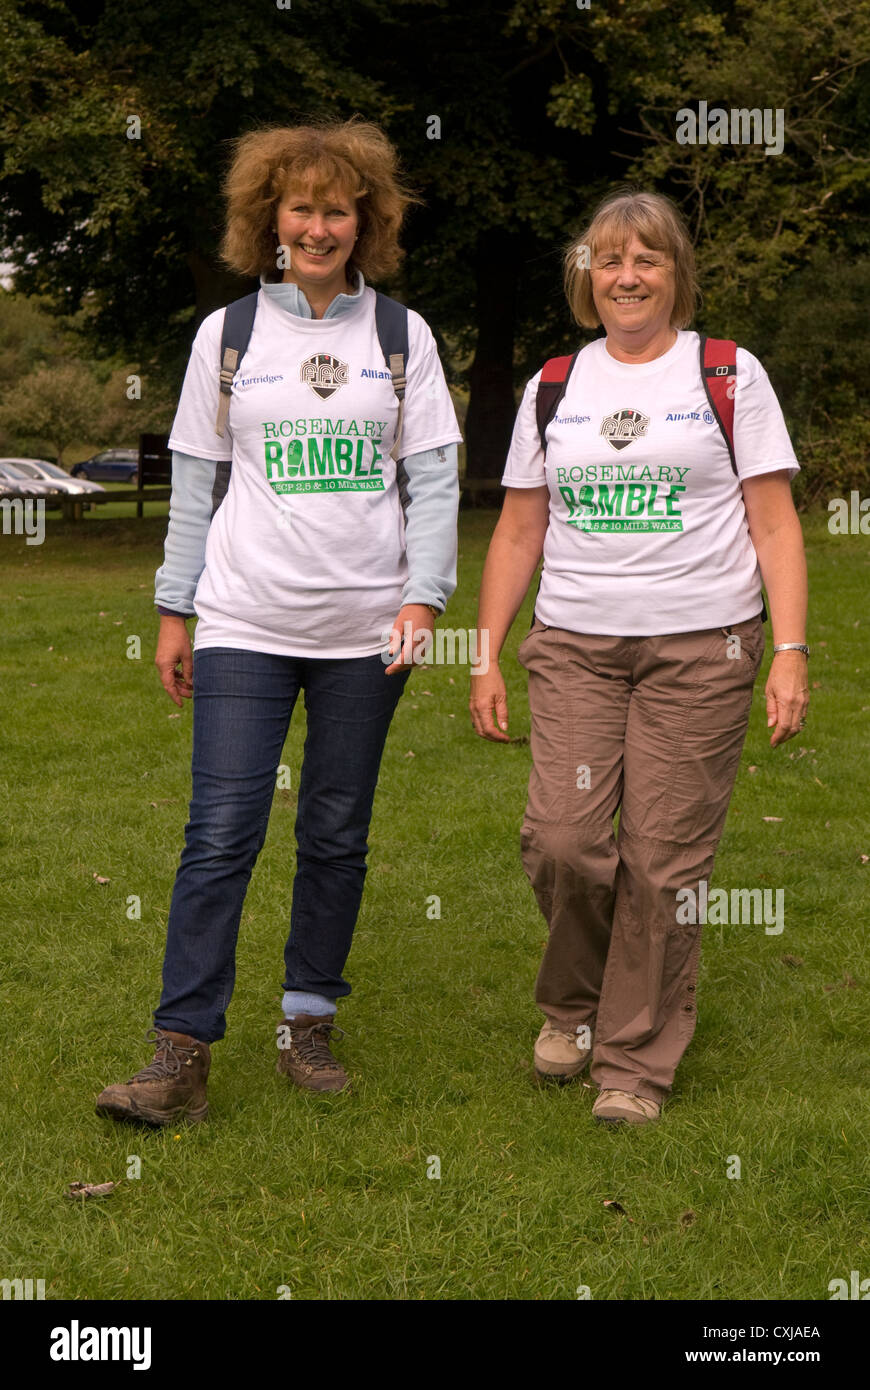 Deux femmes prenant part à une marche de charité, la reine elizabeth Country Park, près de petersfield, Hampshire, Royaume-Uni. Banque D'Images